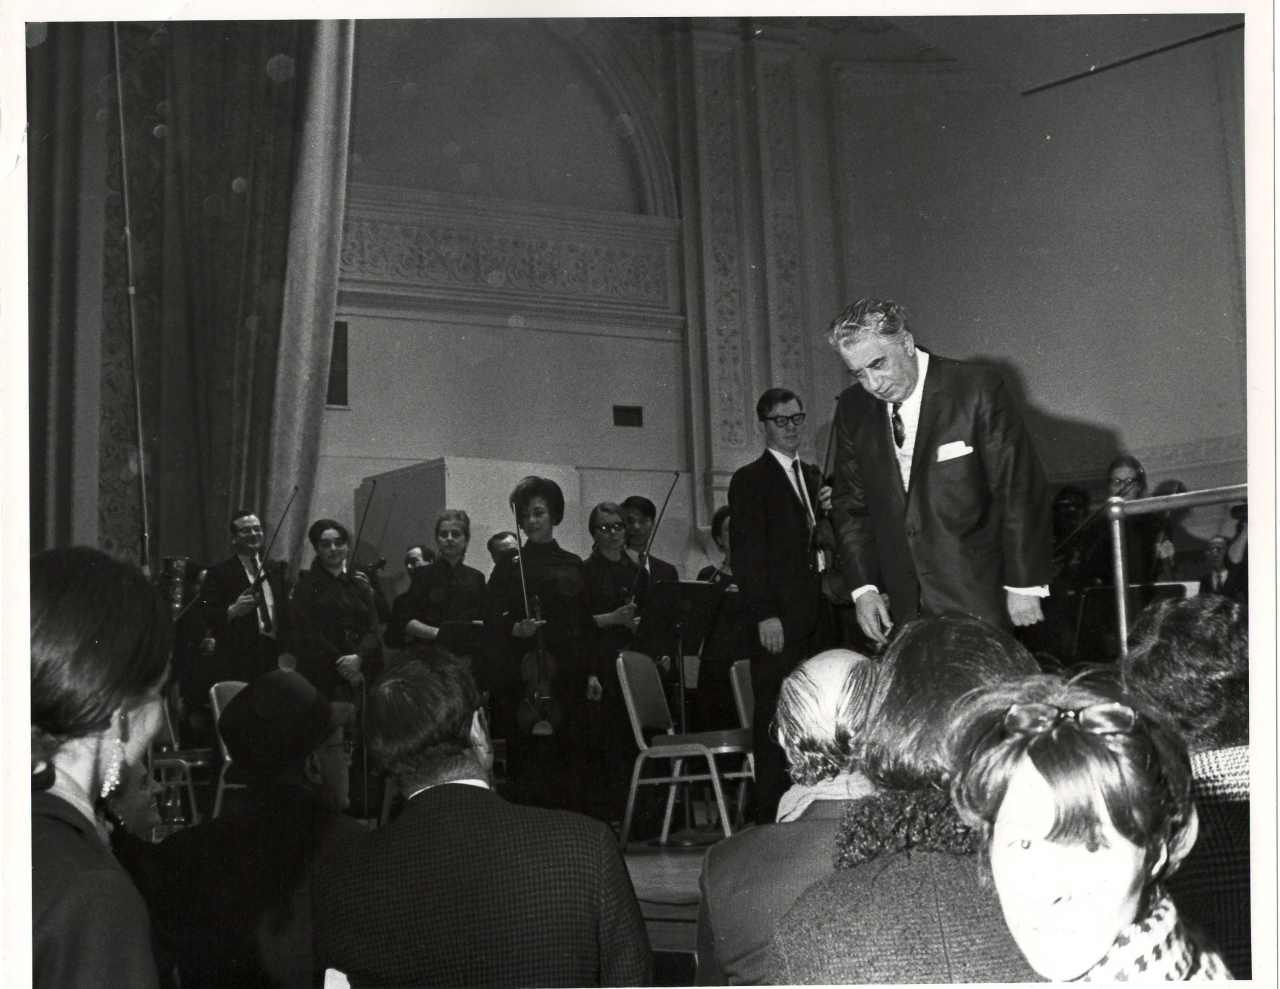 Լուսանկար. Ա. Խաչատրյանը Նյու Յորքի Քարնեգի Հոլ համերգասրահում Ամերիկայի ազգային սիմֆոնիկ նվագախմբի հետ՝ հեղինակային համերգից հետո